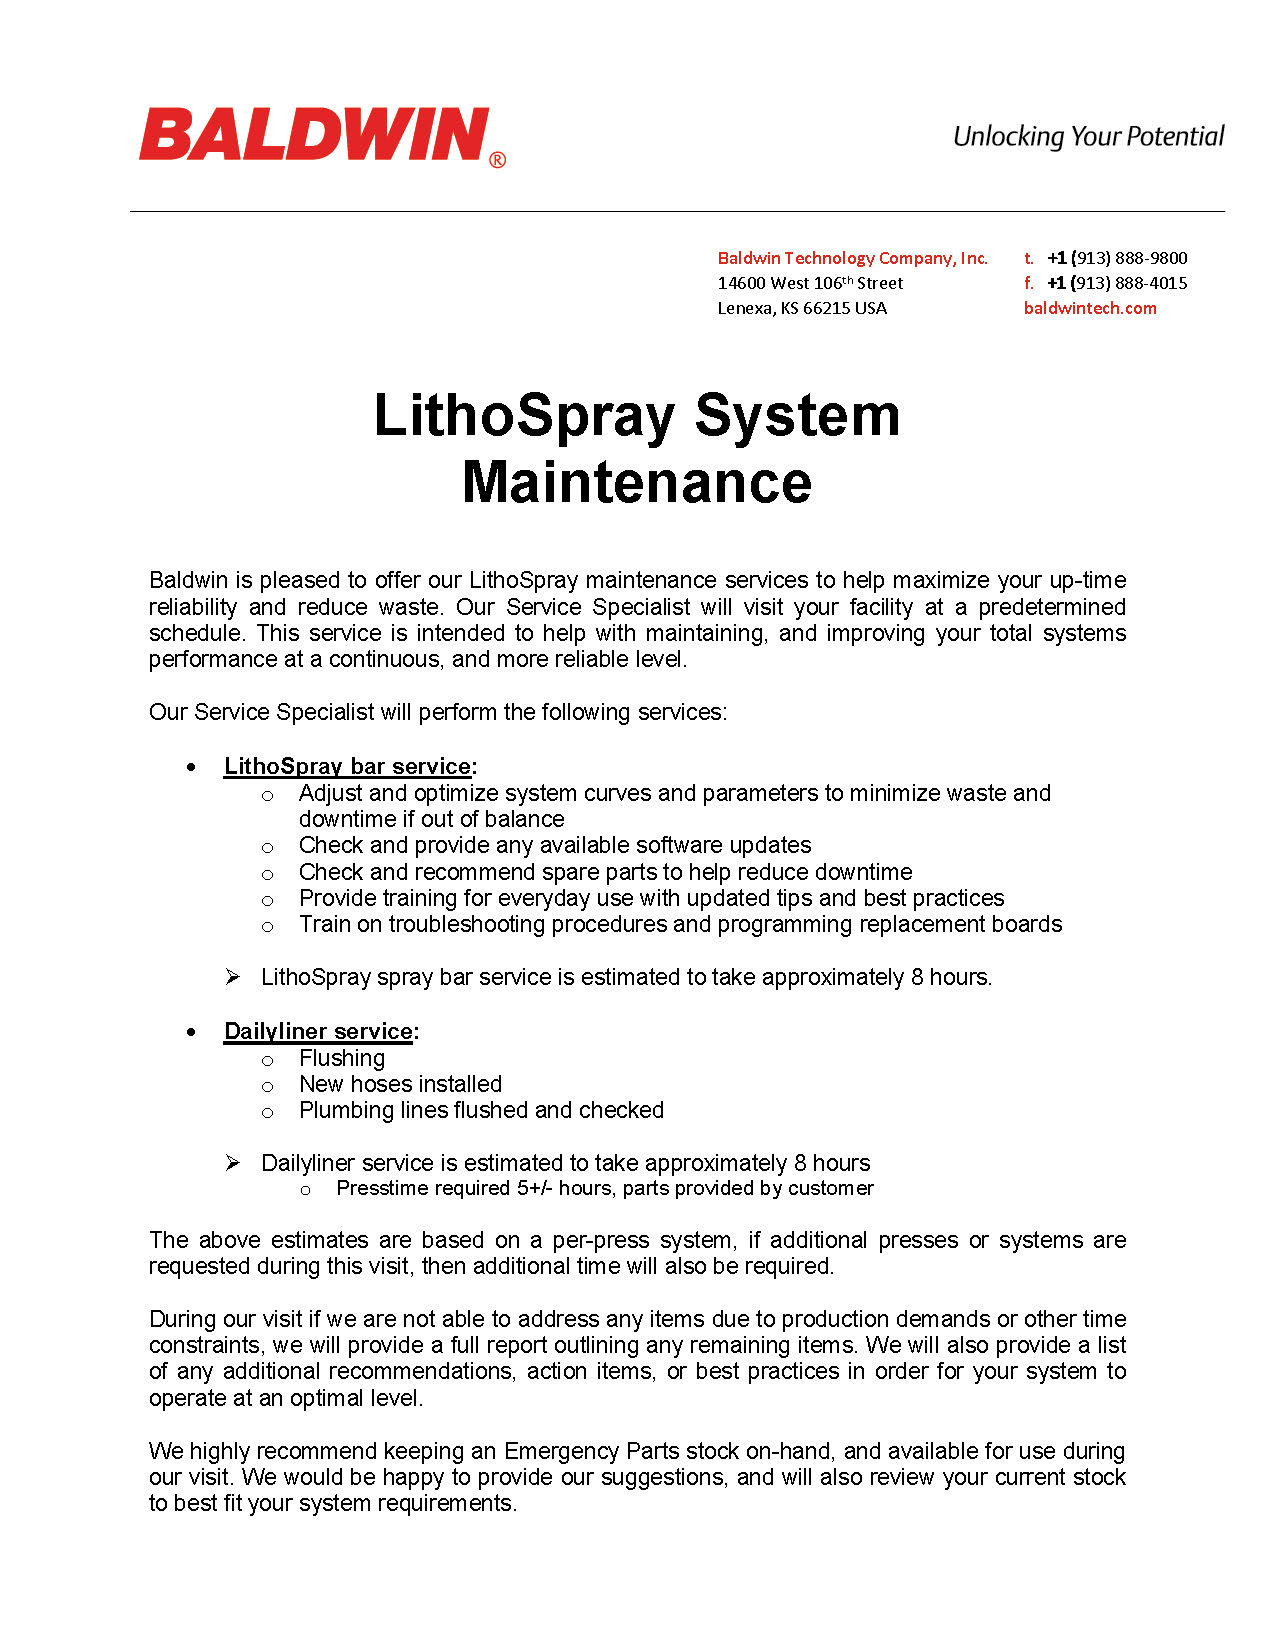 LithoSpray Wartung PDF_Seite_1.jpg